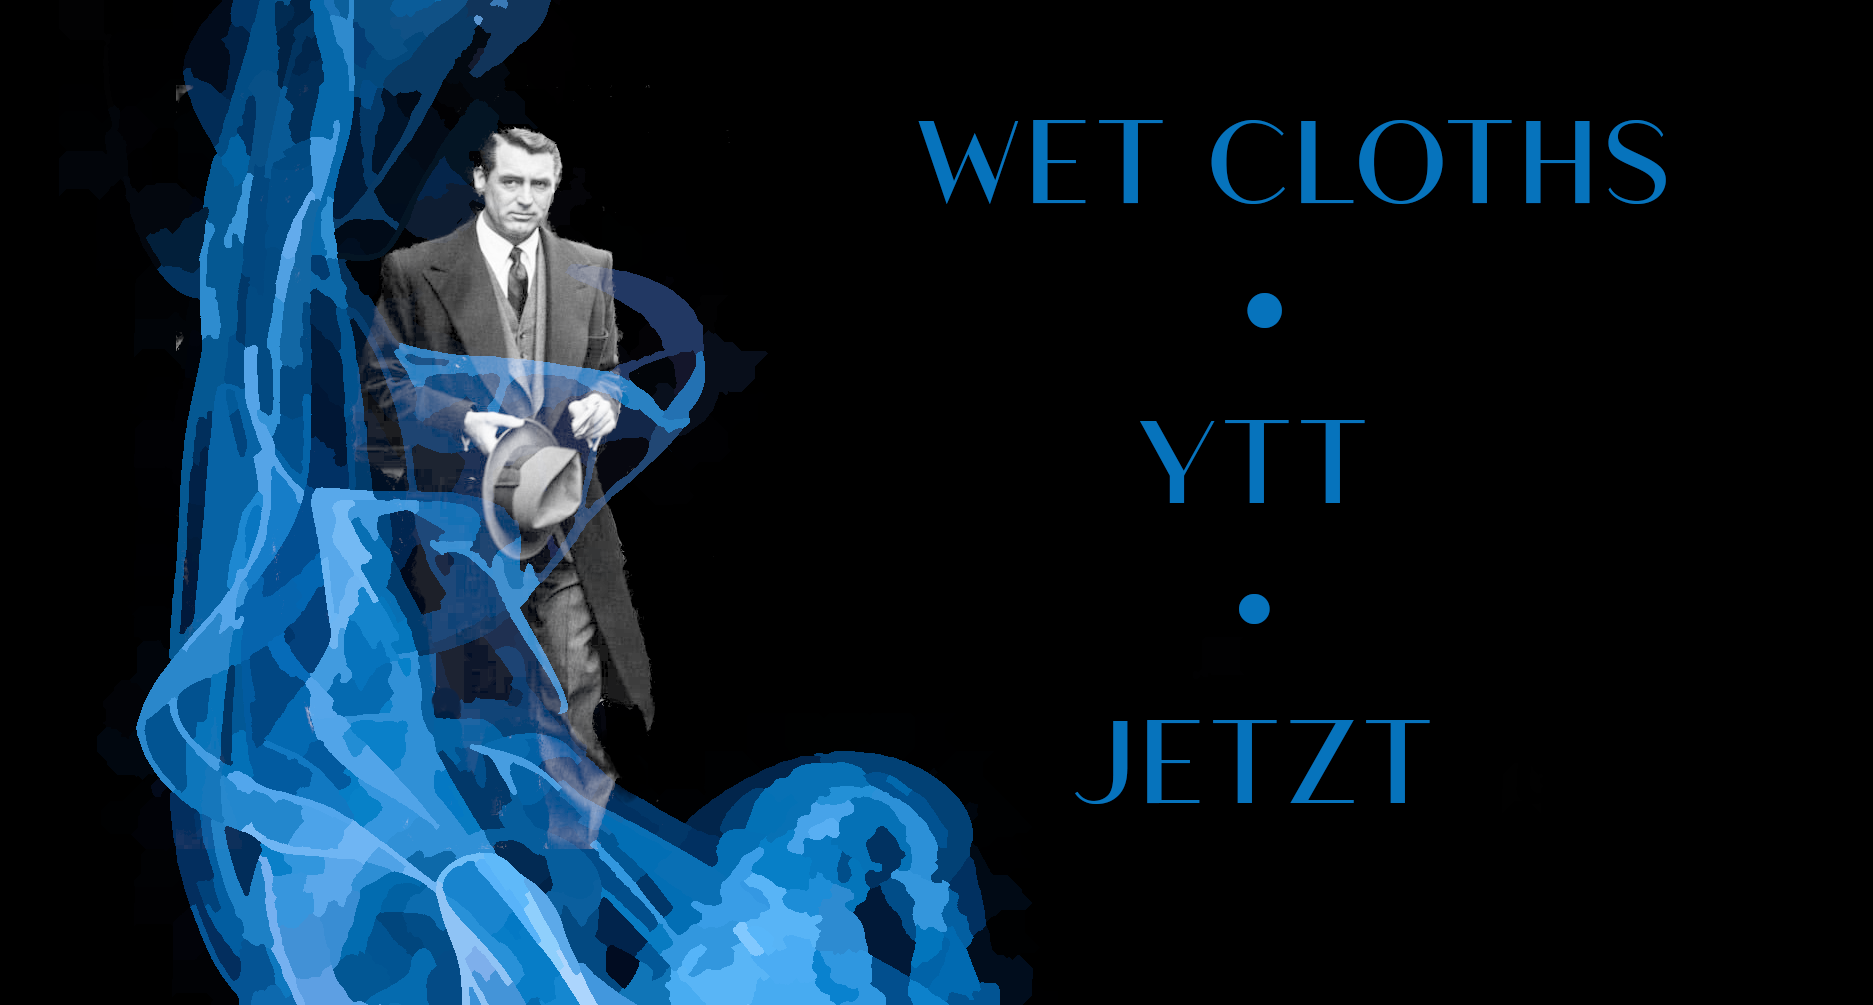 WET CLOTHS | YTT  | JETZT